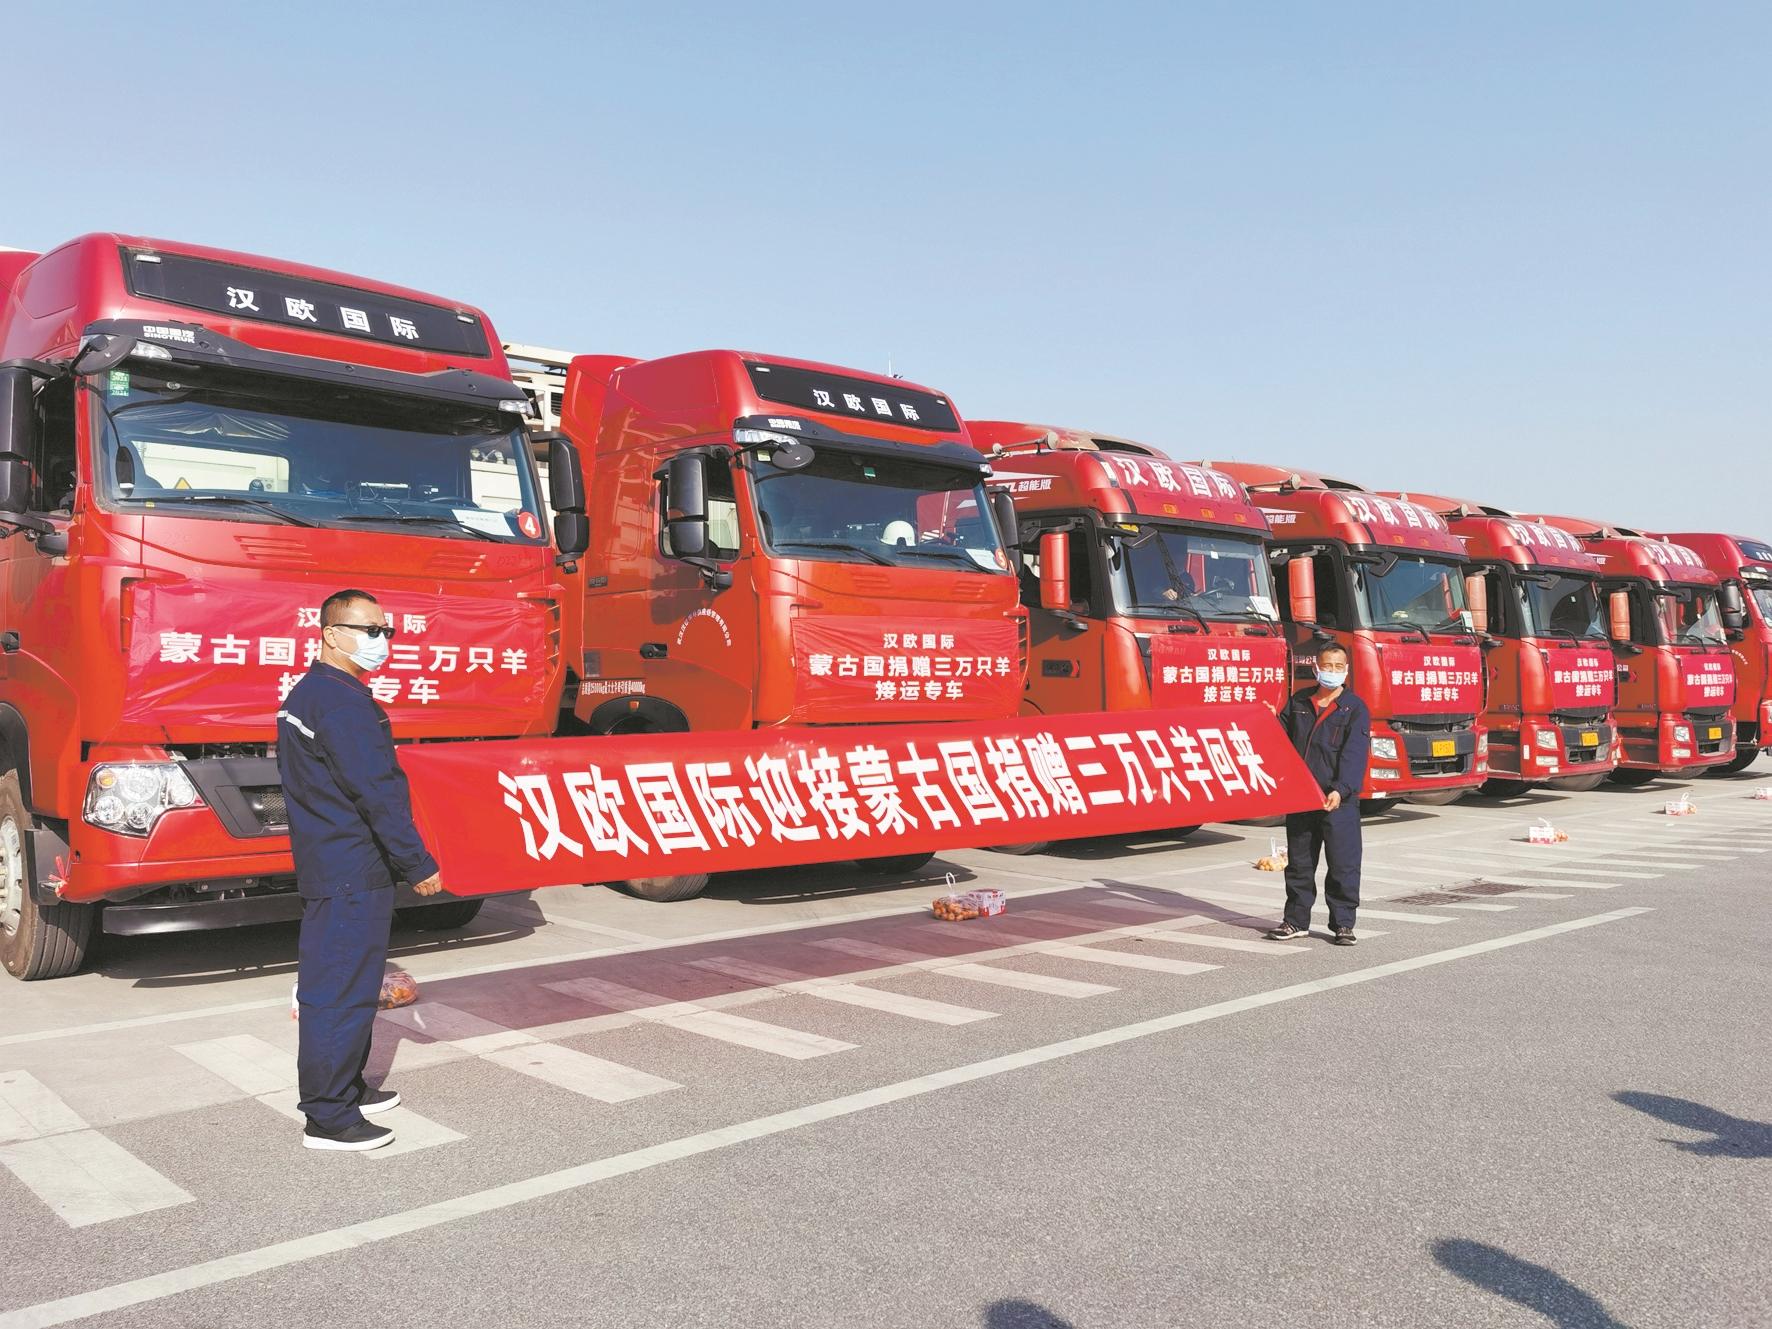 蒙古国捐赠的羊来了！10辆冷链专车昨从武汉启程赴二连浩特，首批1.2万只冻羊周日将运回湖北